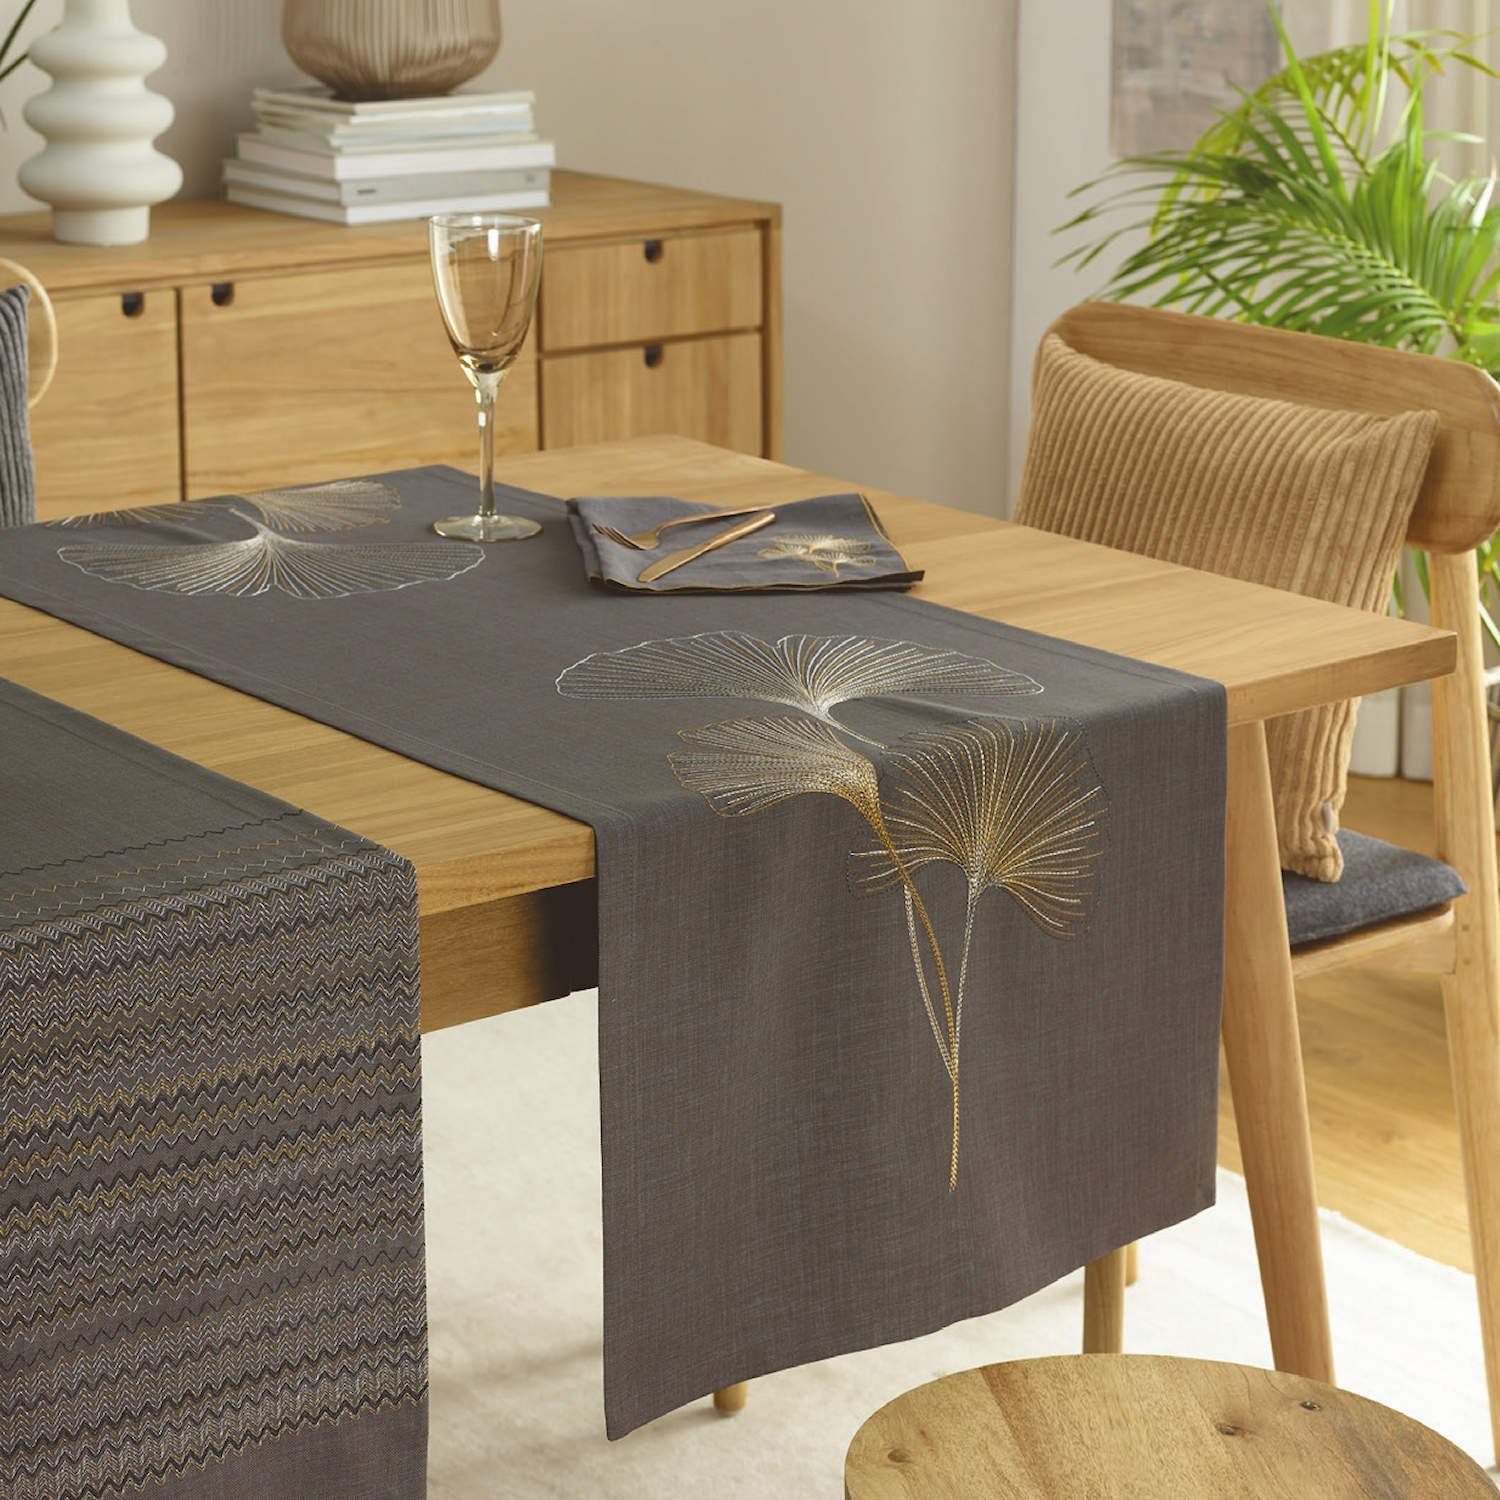 Mitteldecke table Exclusive + (1-tlg) veredelt 85x85 sander cm Biloba home Ginkgo Mitteldecke creme bestickt